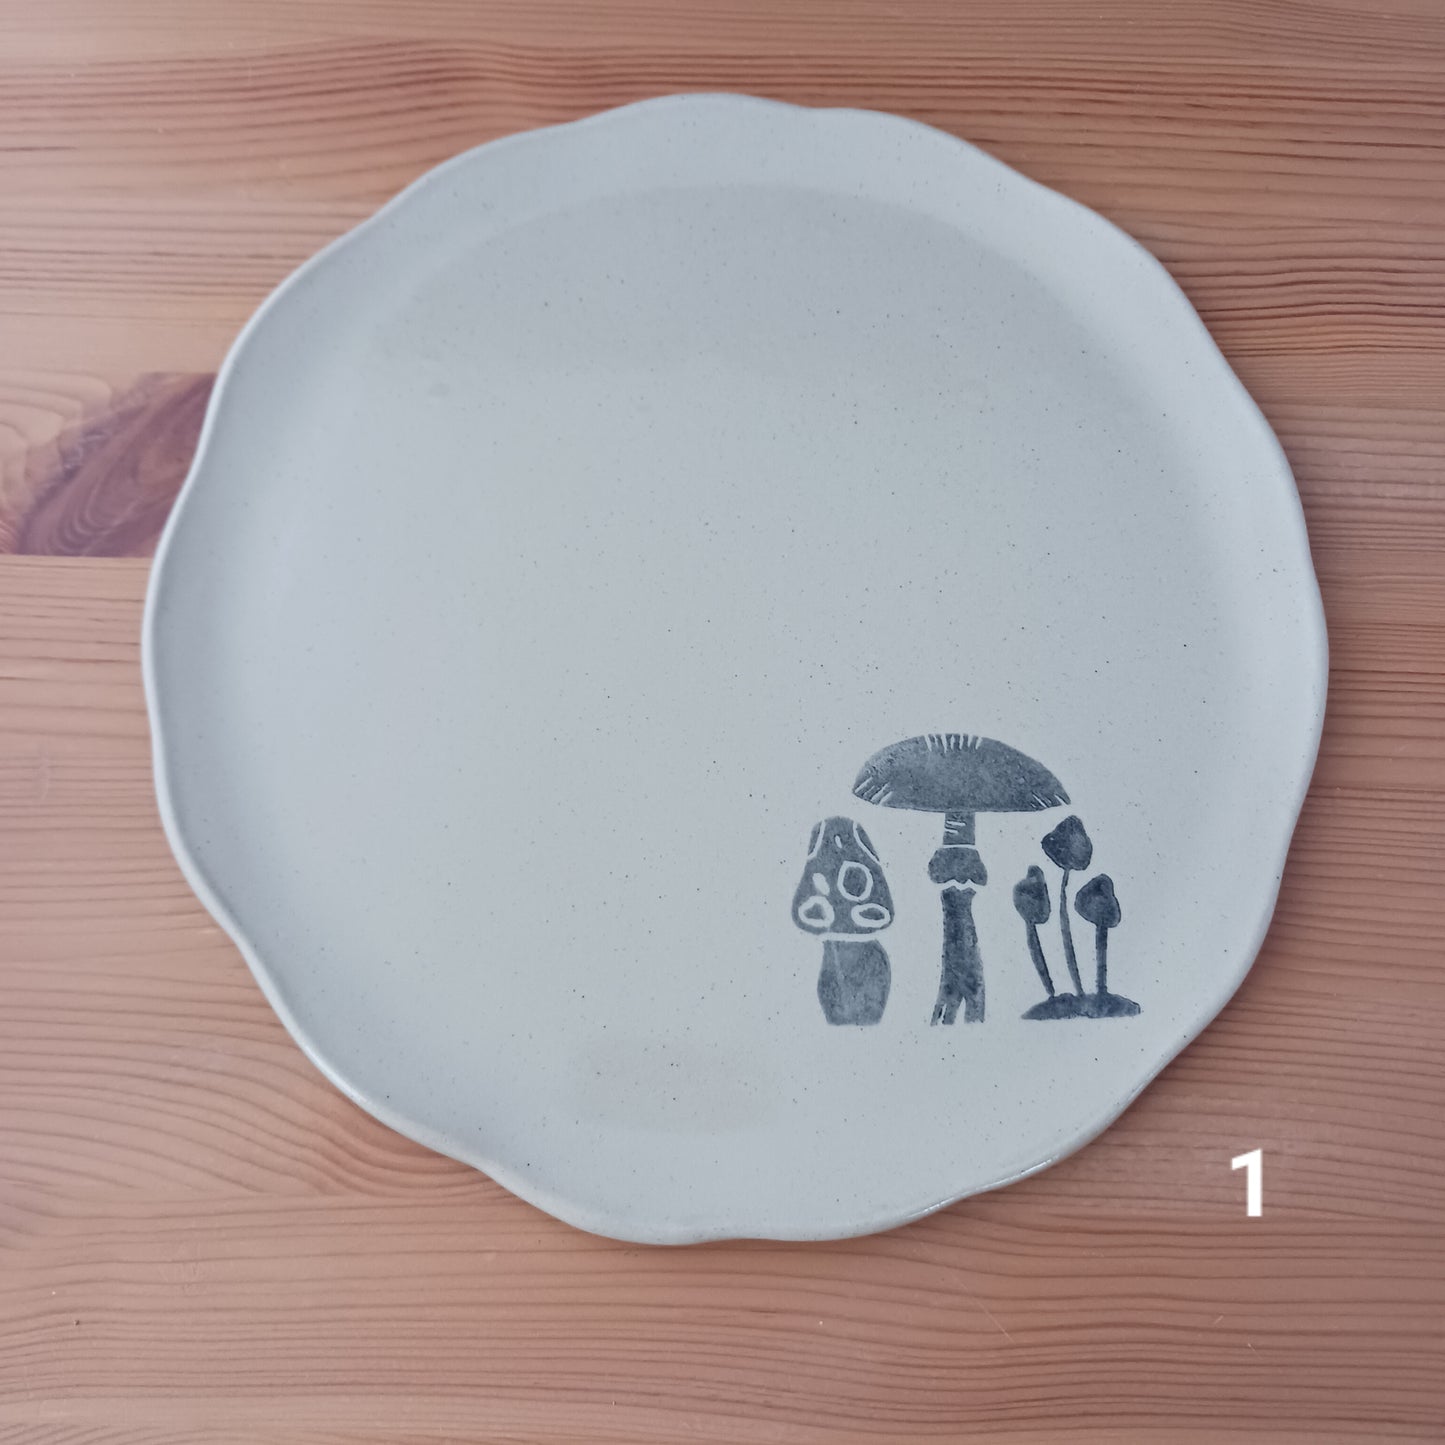 Mushroom plates